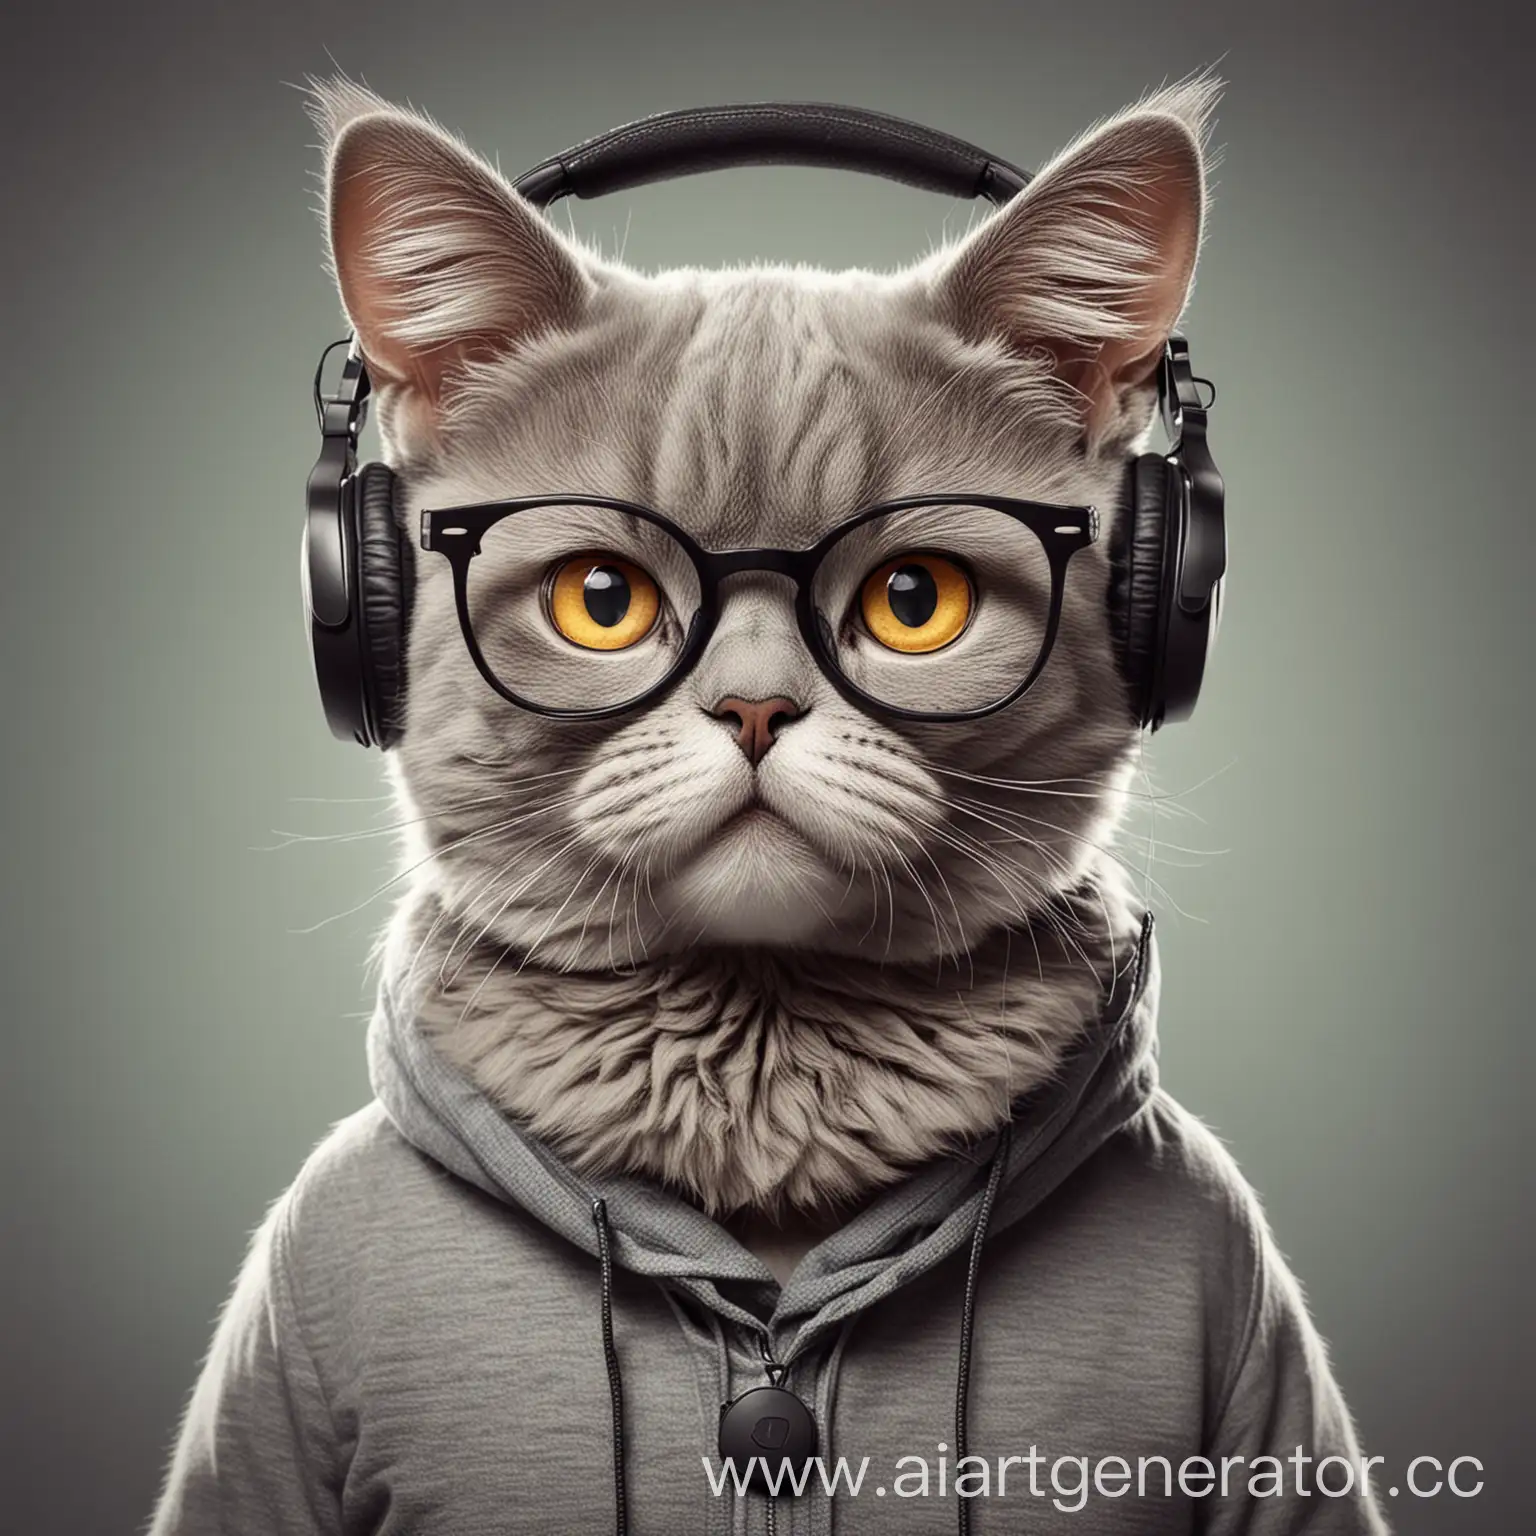 Cartoonish-Gray-British-Cat-Hipster-Wearing-Glasses-and-Headphones